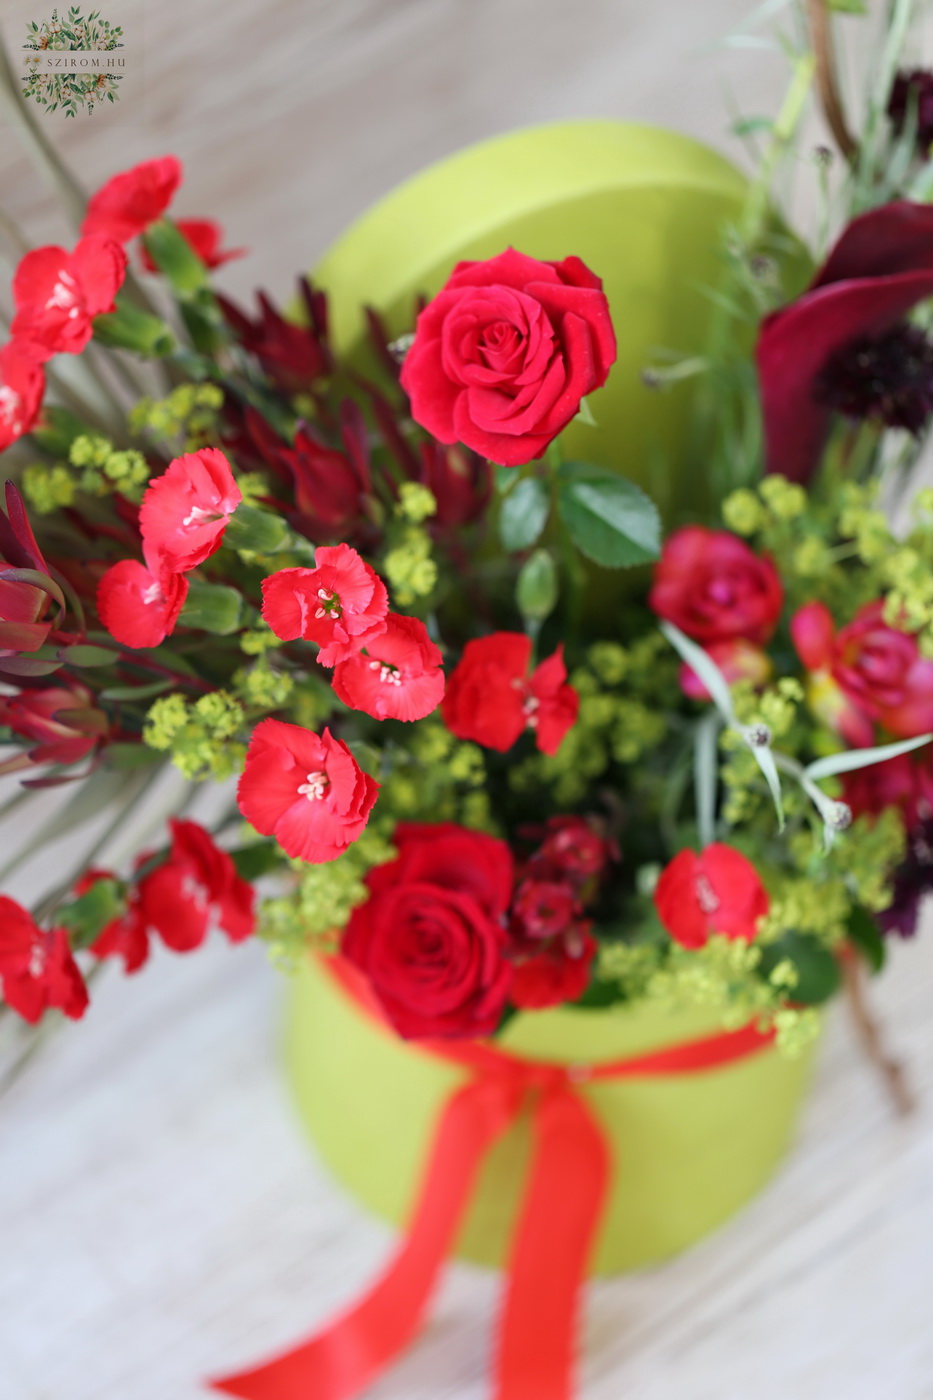 Virágküldés Budapest - Üde zöld félhold doboz vörös bokros rózsával, kálával és dianthus solomioval 